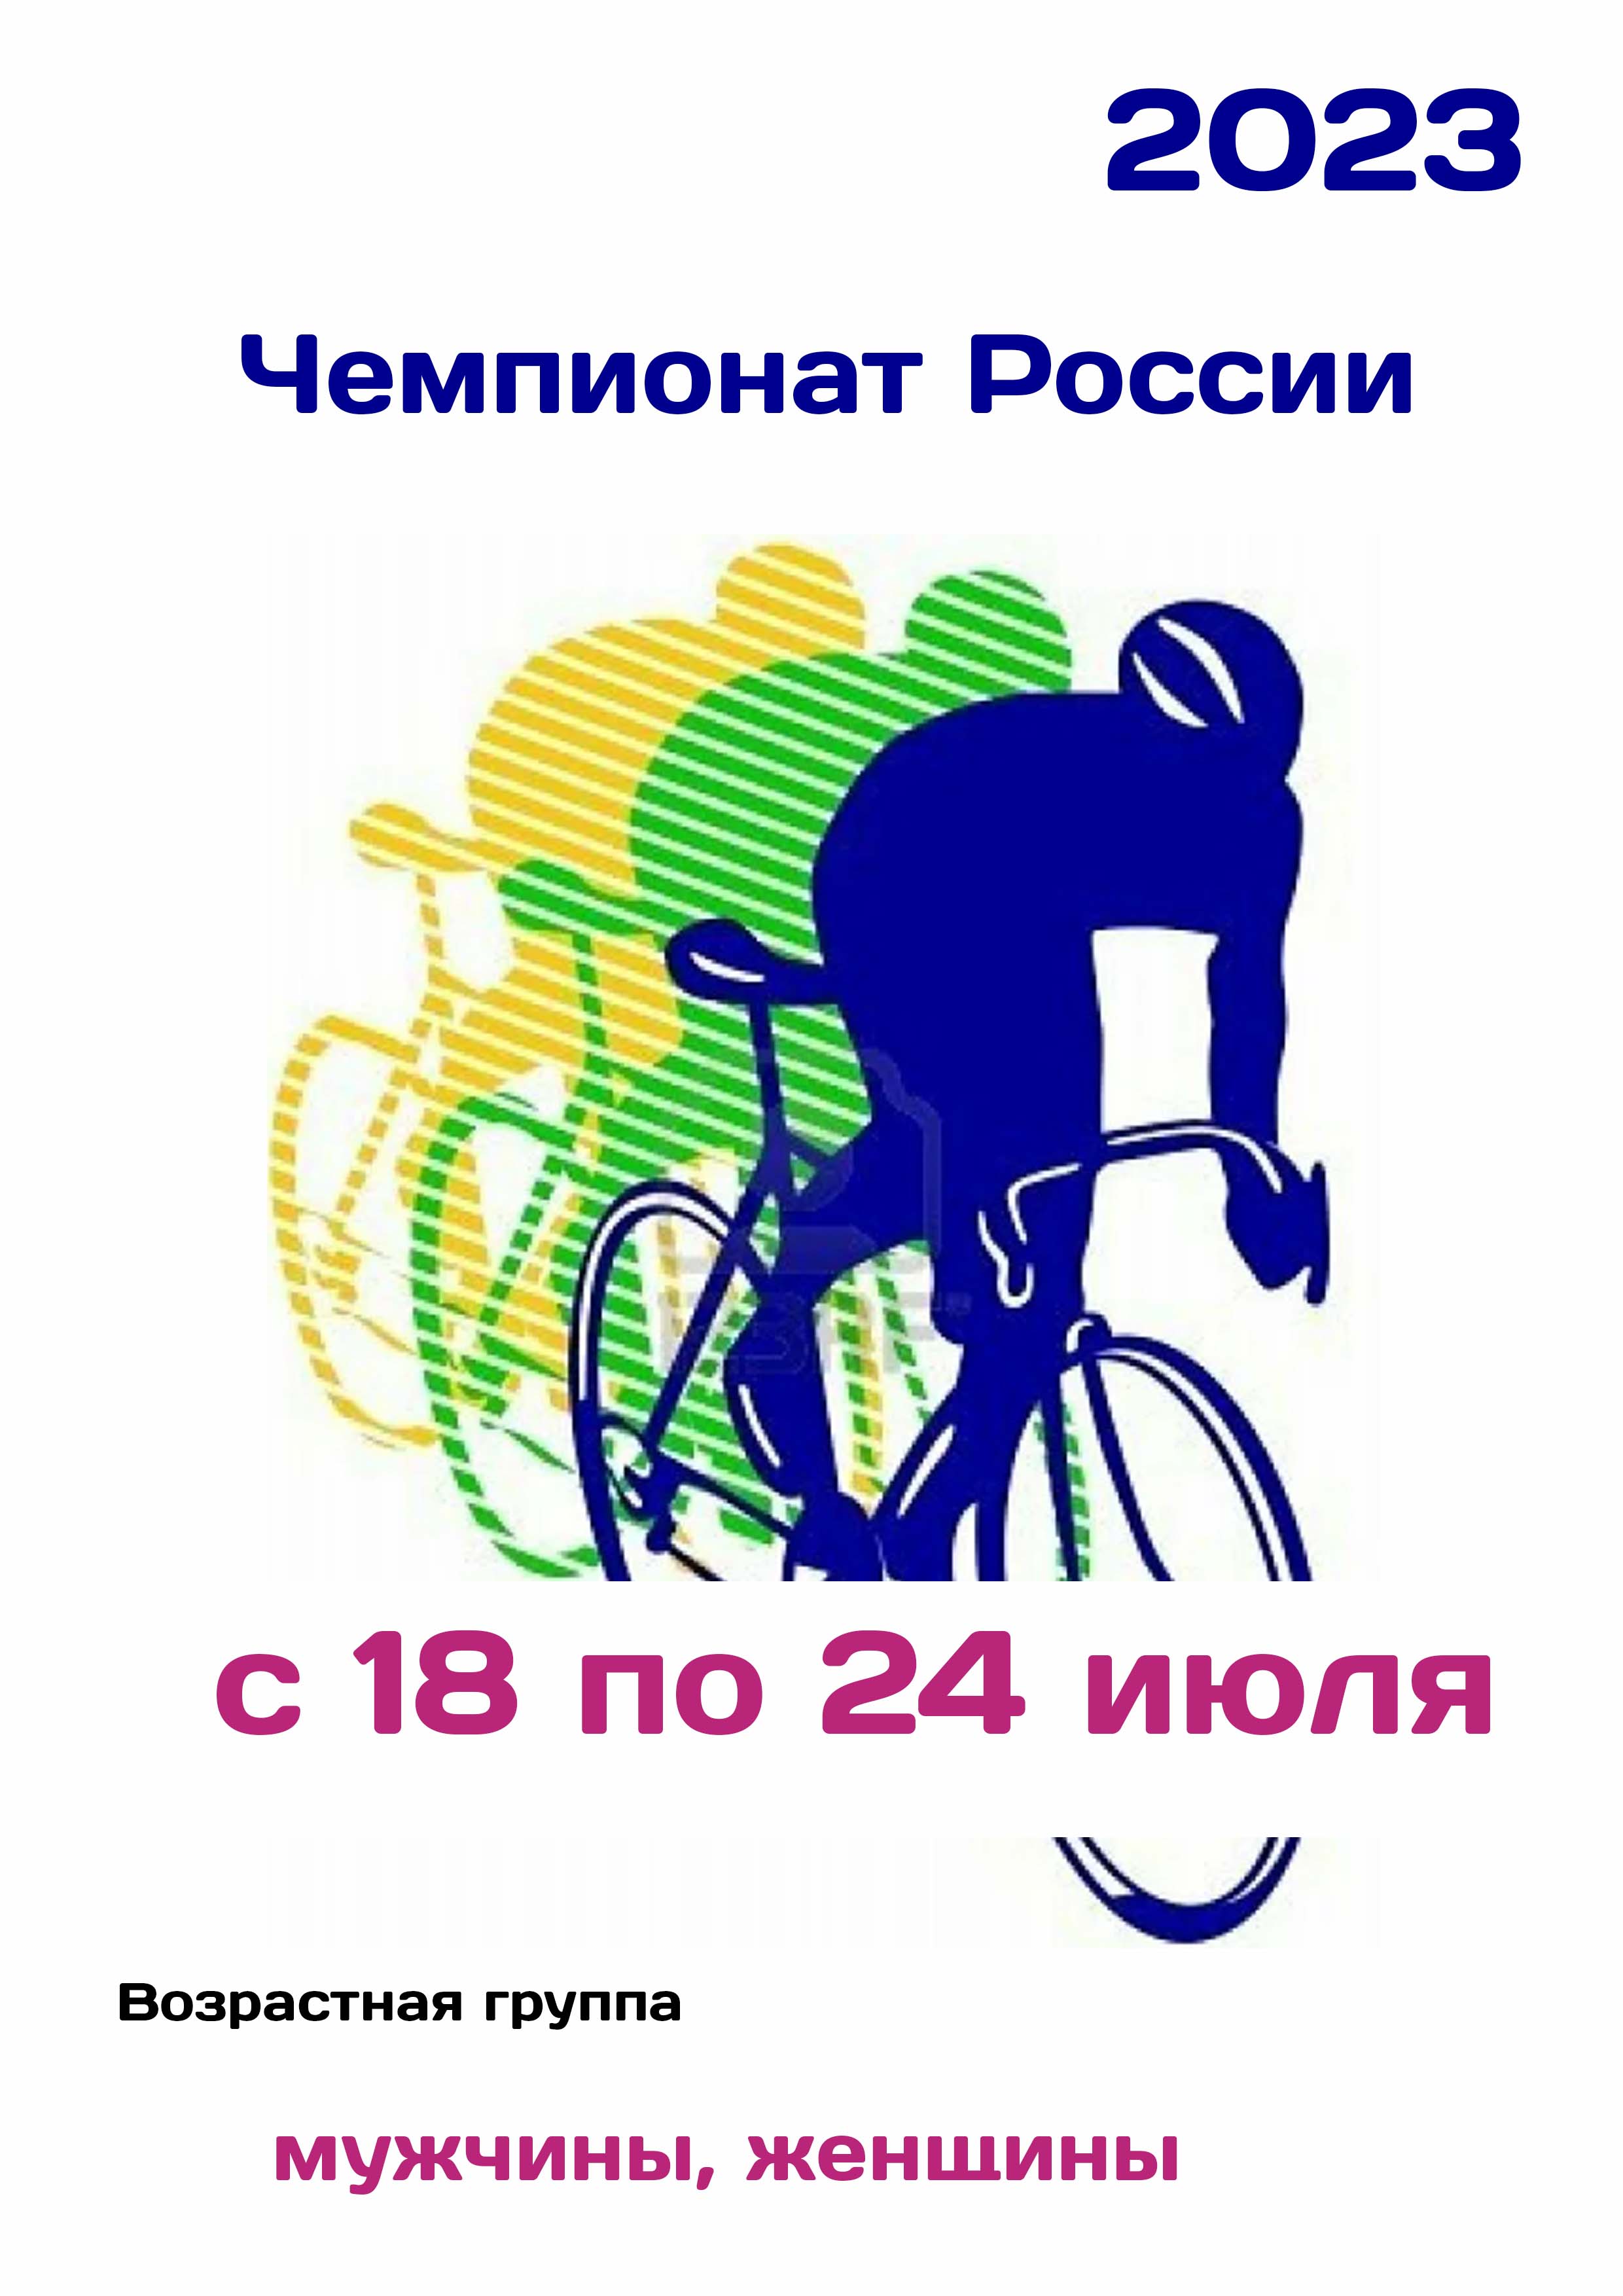 Чемпионат России по велоспорту 18  Júl je
 2023  rok
 